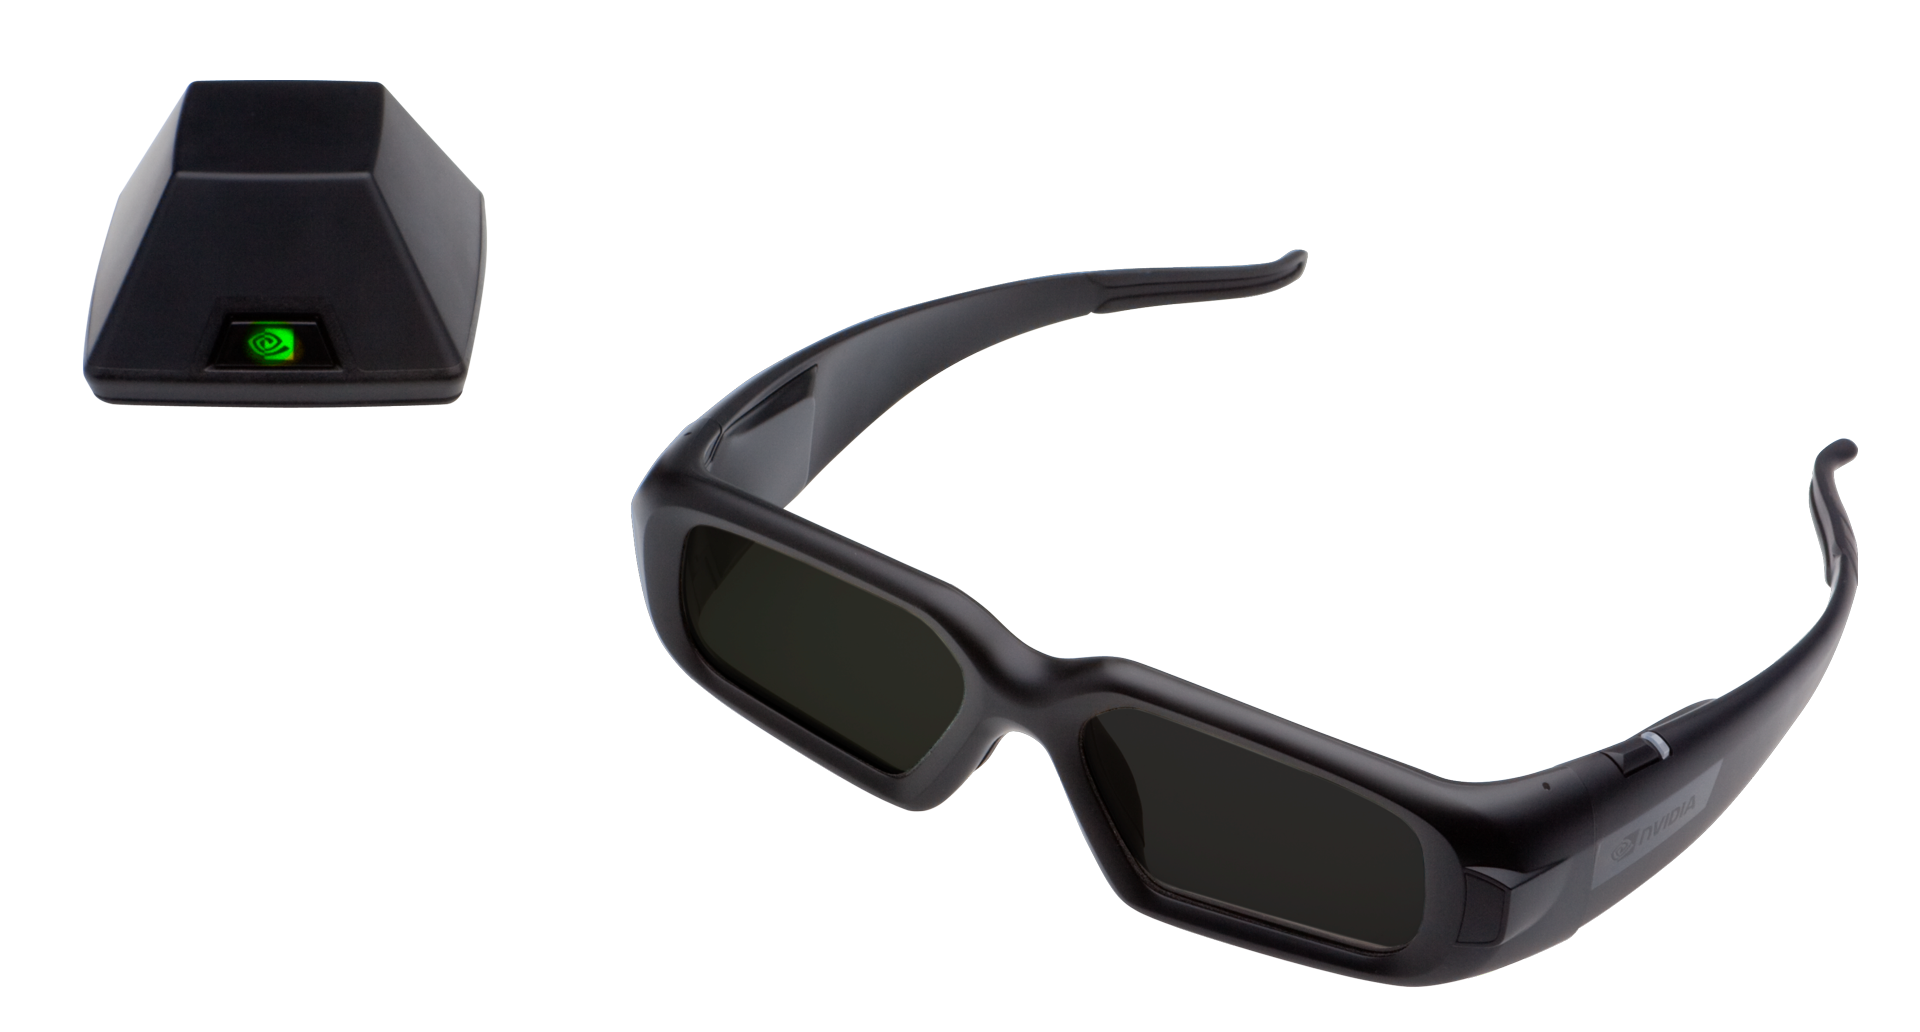 Immagine pubblicata in relazione al seguente contenuto: NVIDIA annuncia la tecnologia stereoscopica 3D Vision Pro | Nome immagine: news13606_1.png